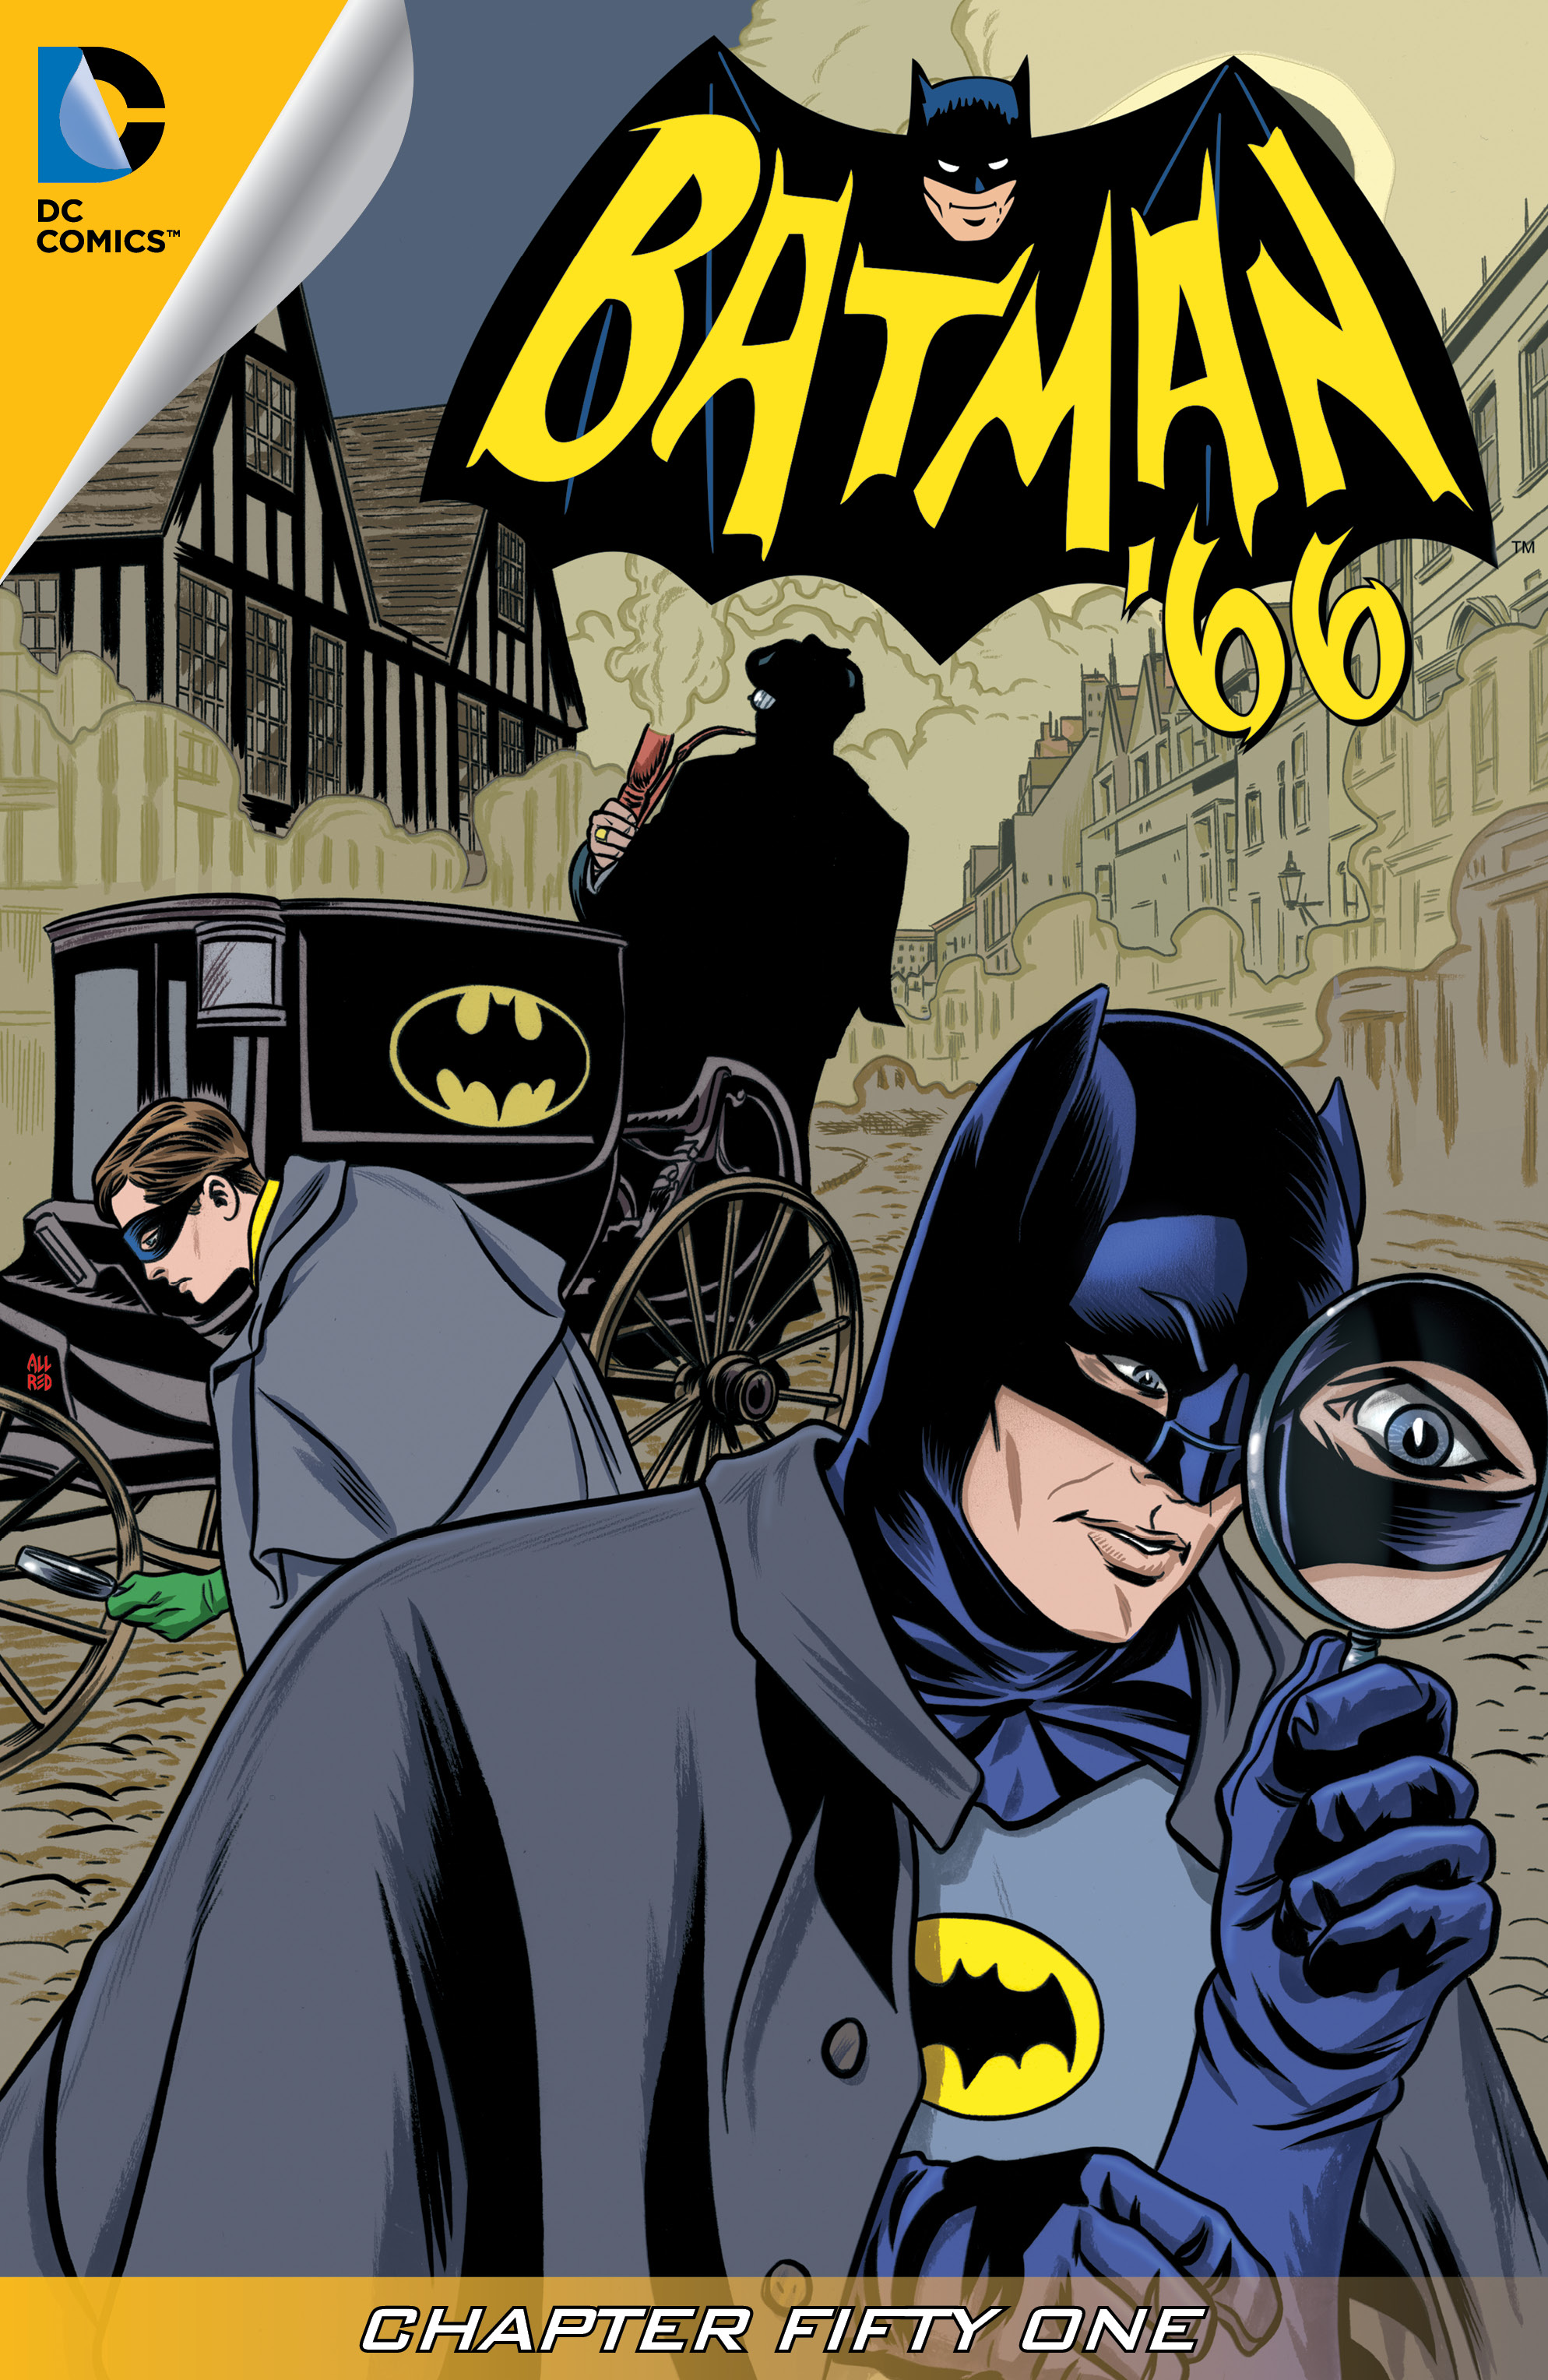 Batman '66 #51 preview images